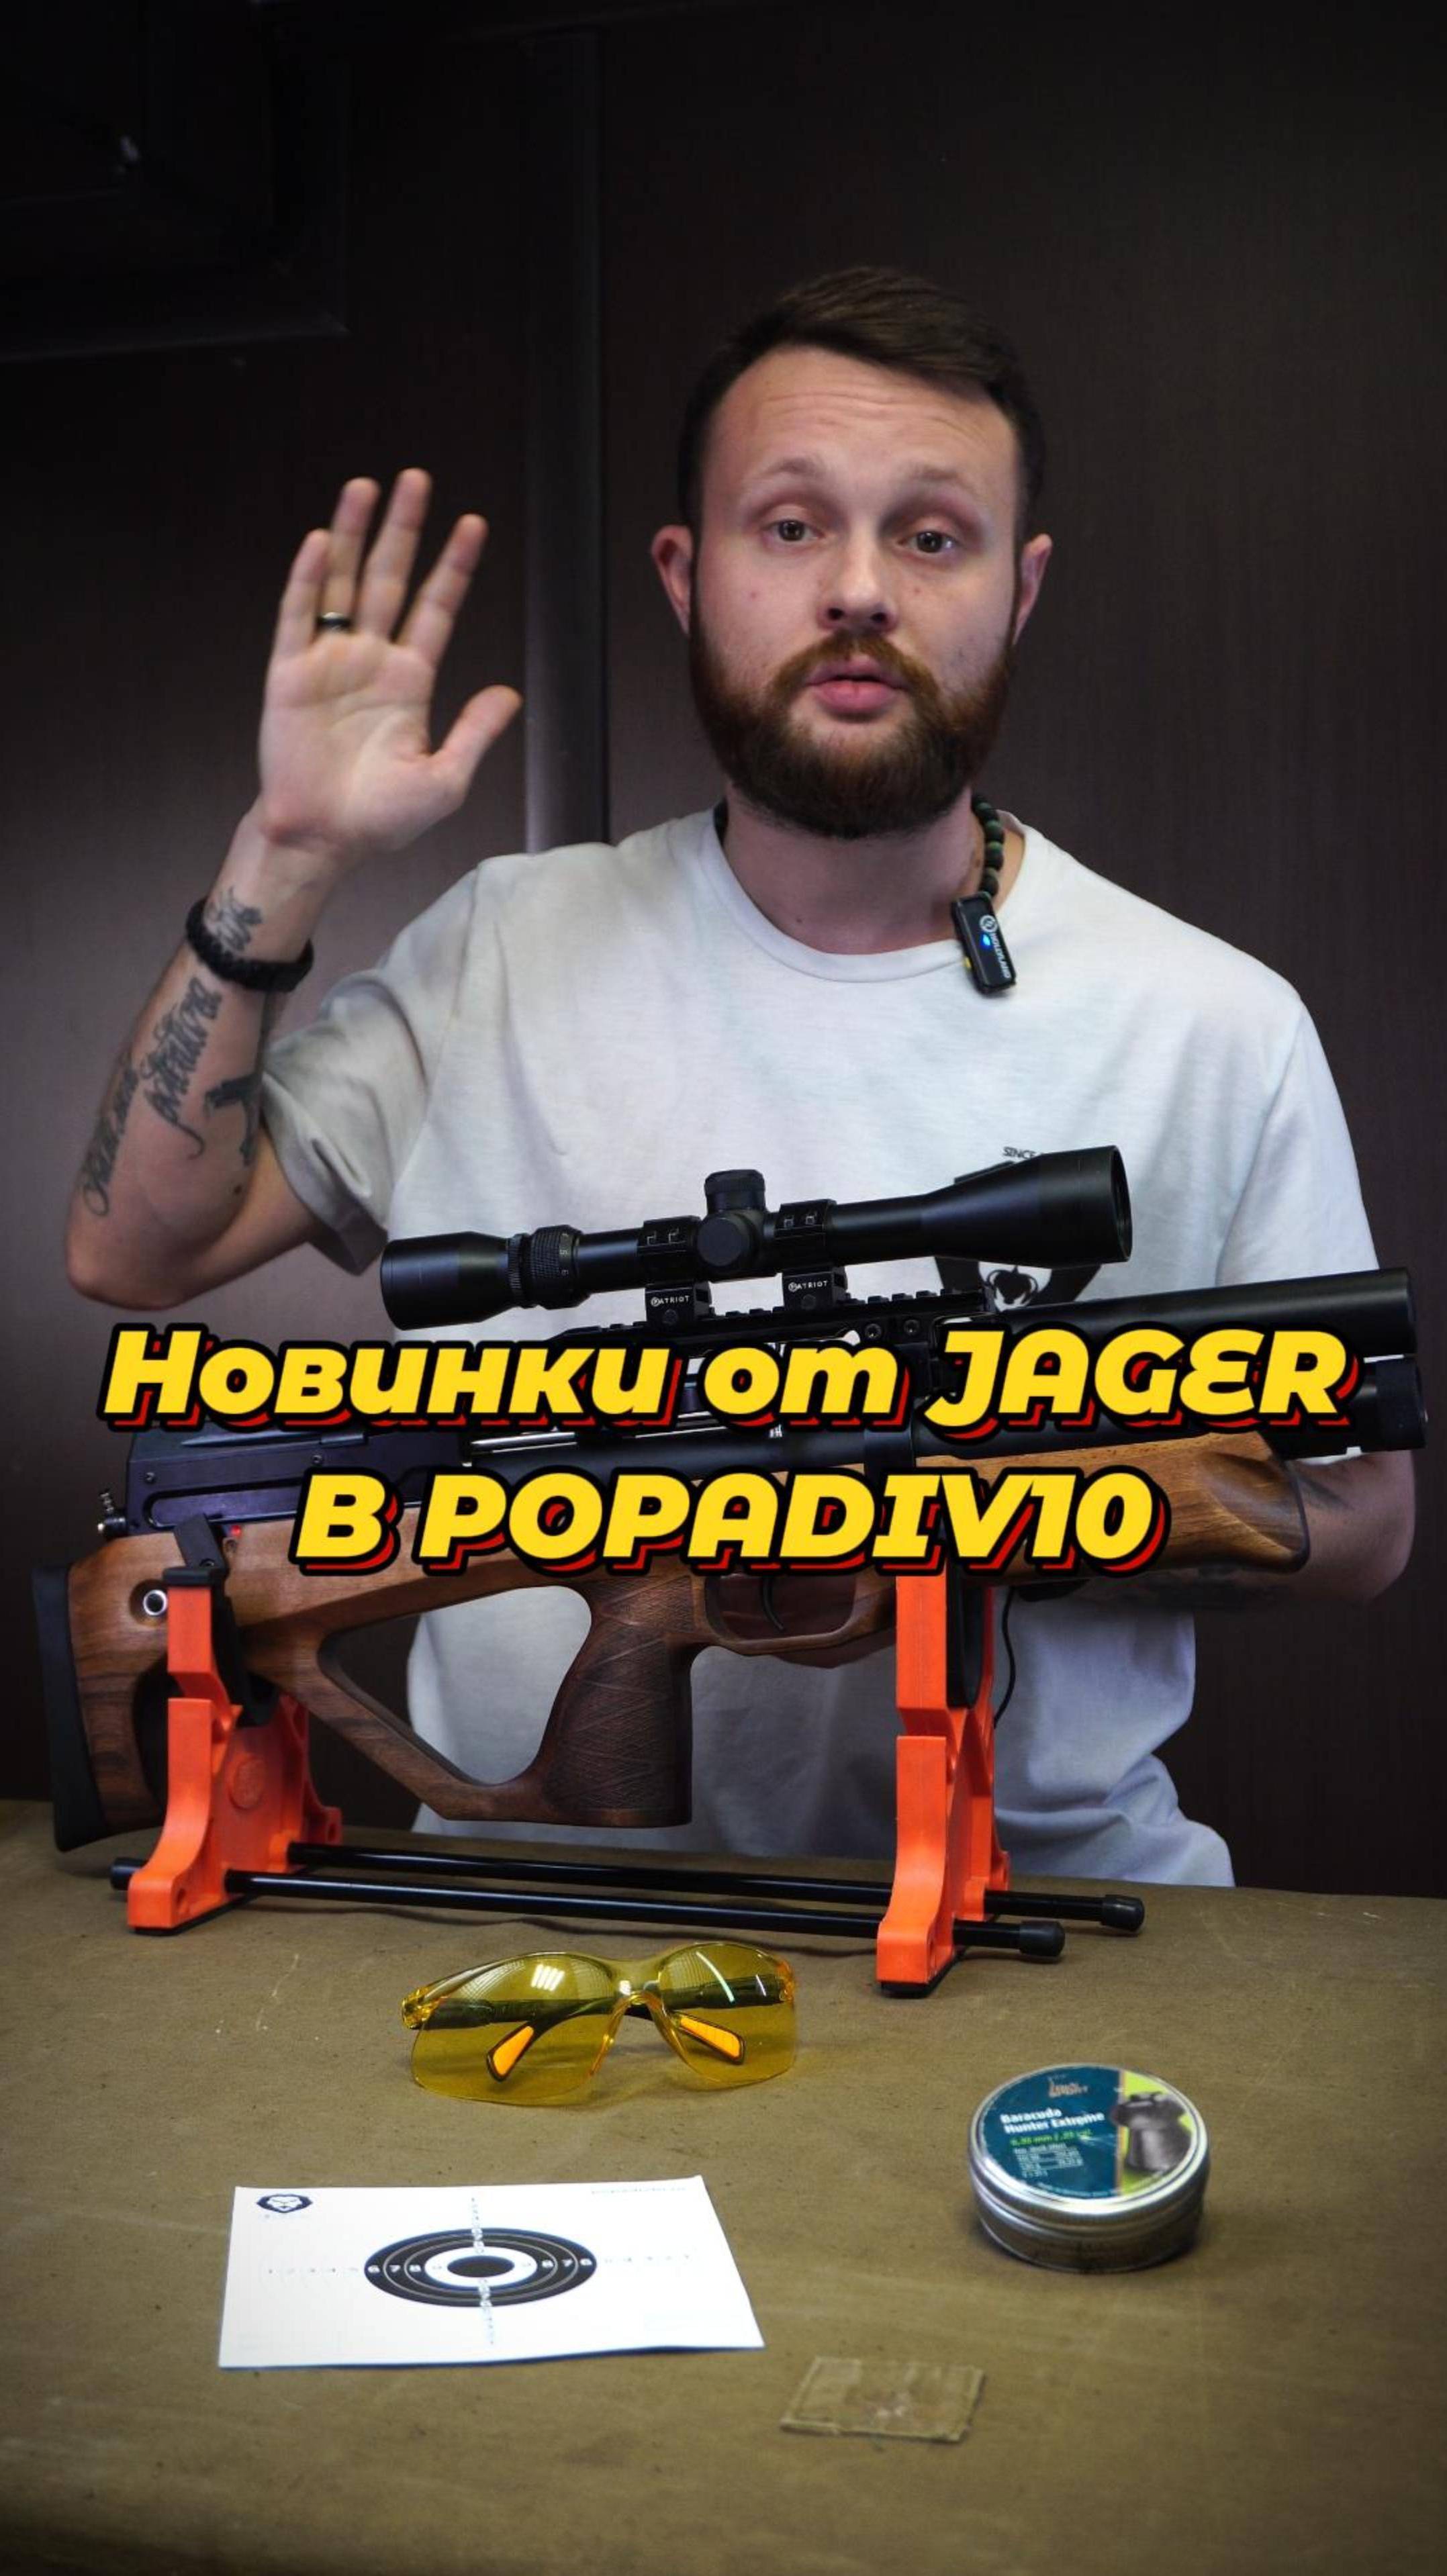 Новинки от Jager в PopadiV10